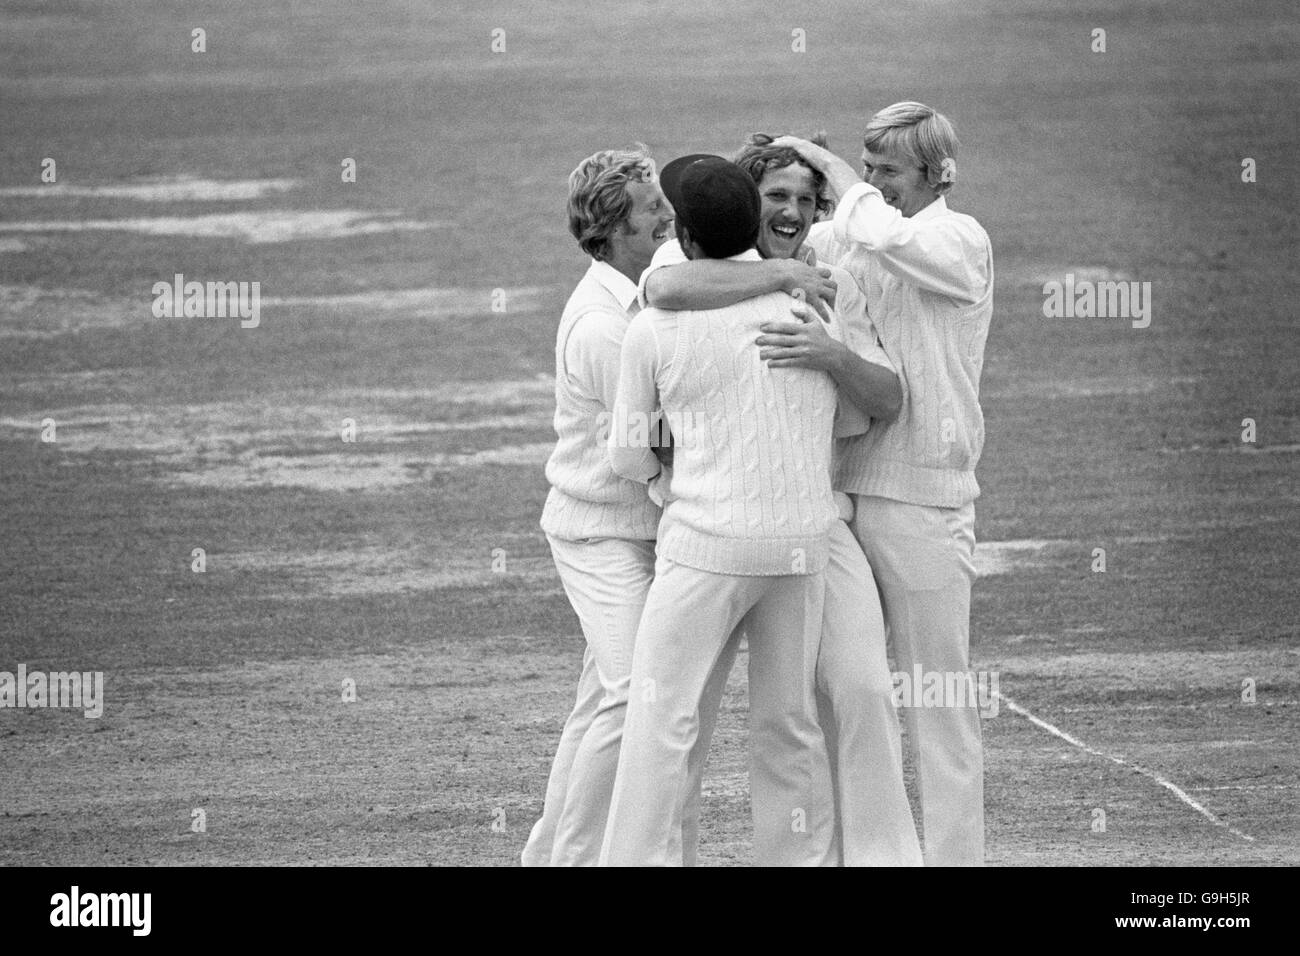 Cricket - Gillette Cup - Finale - Somerset gegen Sussex - Lord's. Ian Botham von Somerset (zweite r) feiert mit seinen Teamkollegen nach dem Wicket von Sussex's Imran Khan (aus Bild) Stockfoto